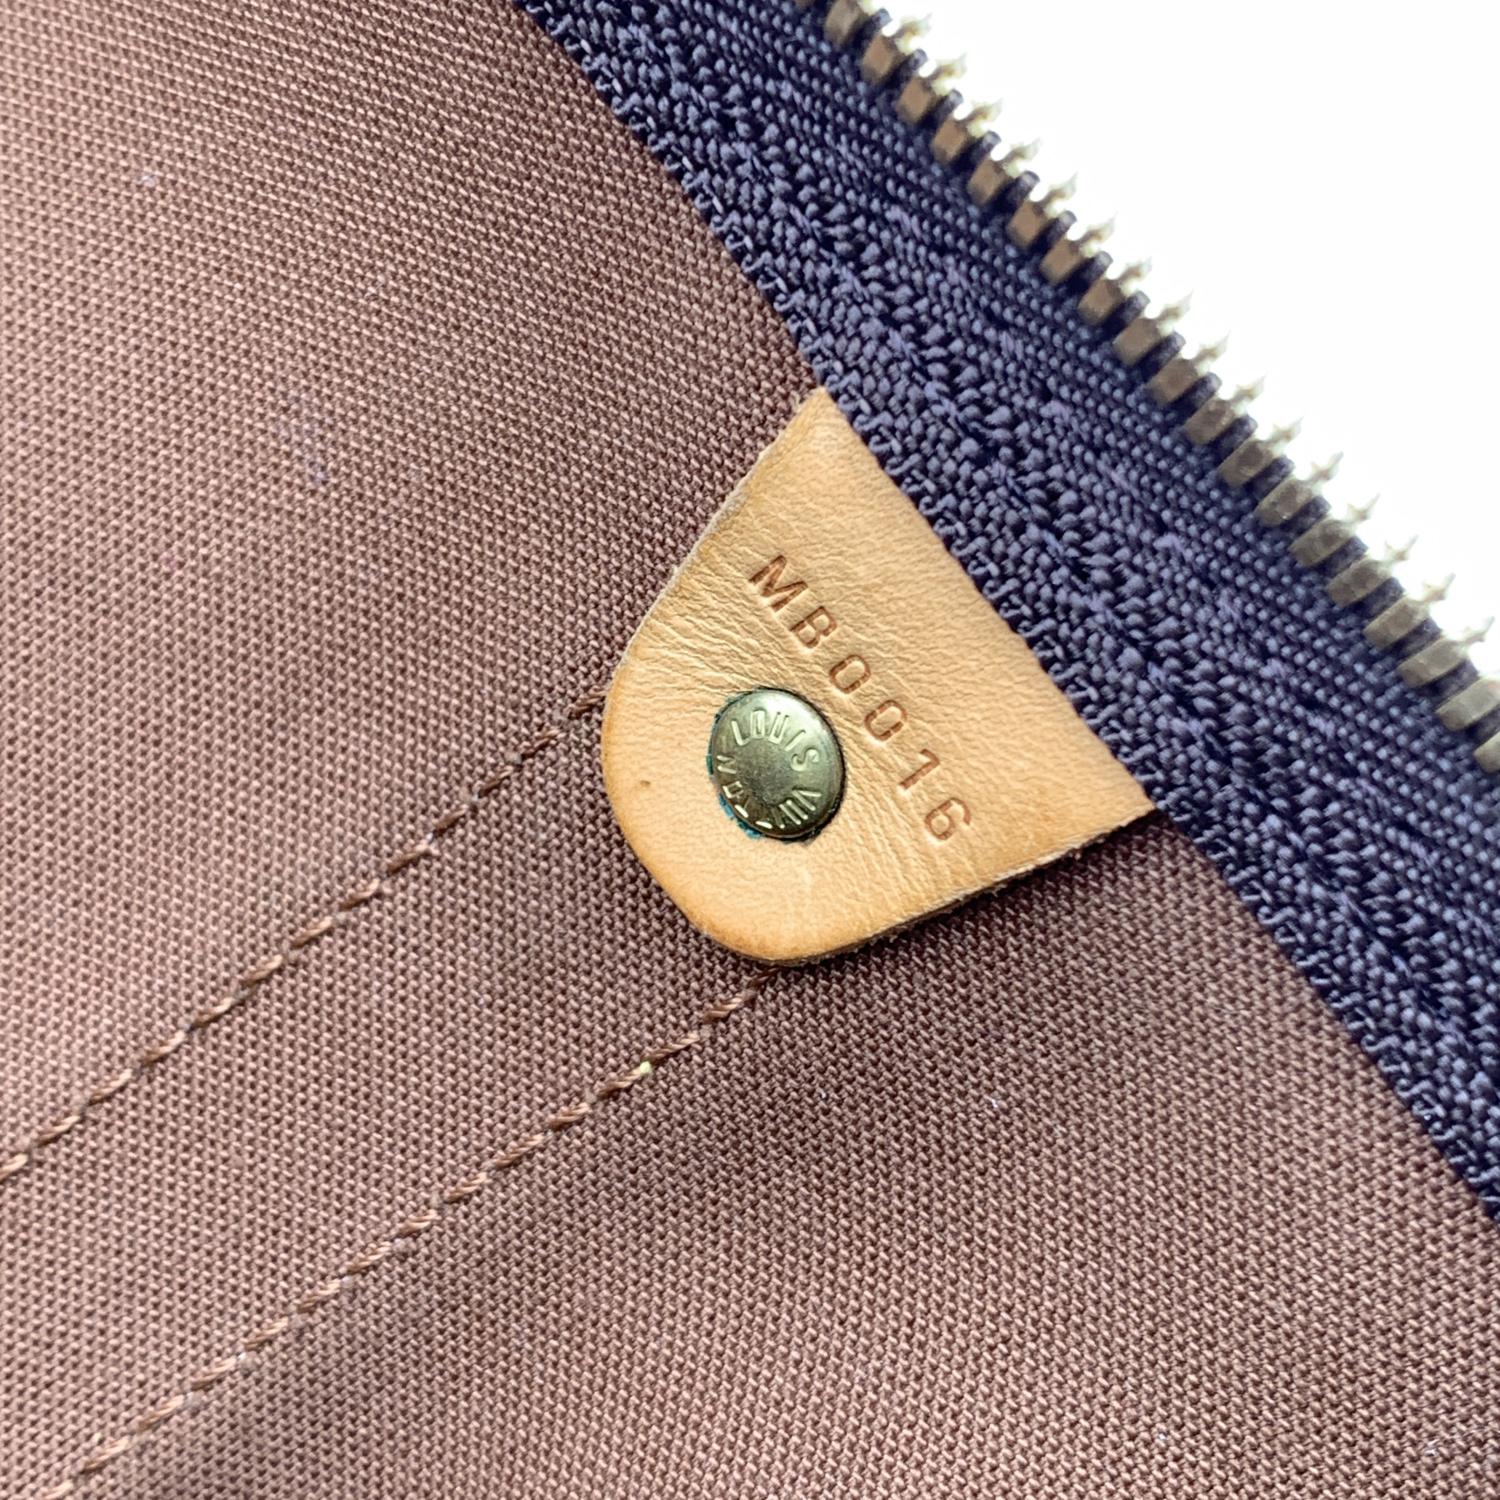 Louis Vuitton Monogram Keepall 60 Travel Large Duffle Bag M41412 4